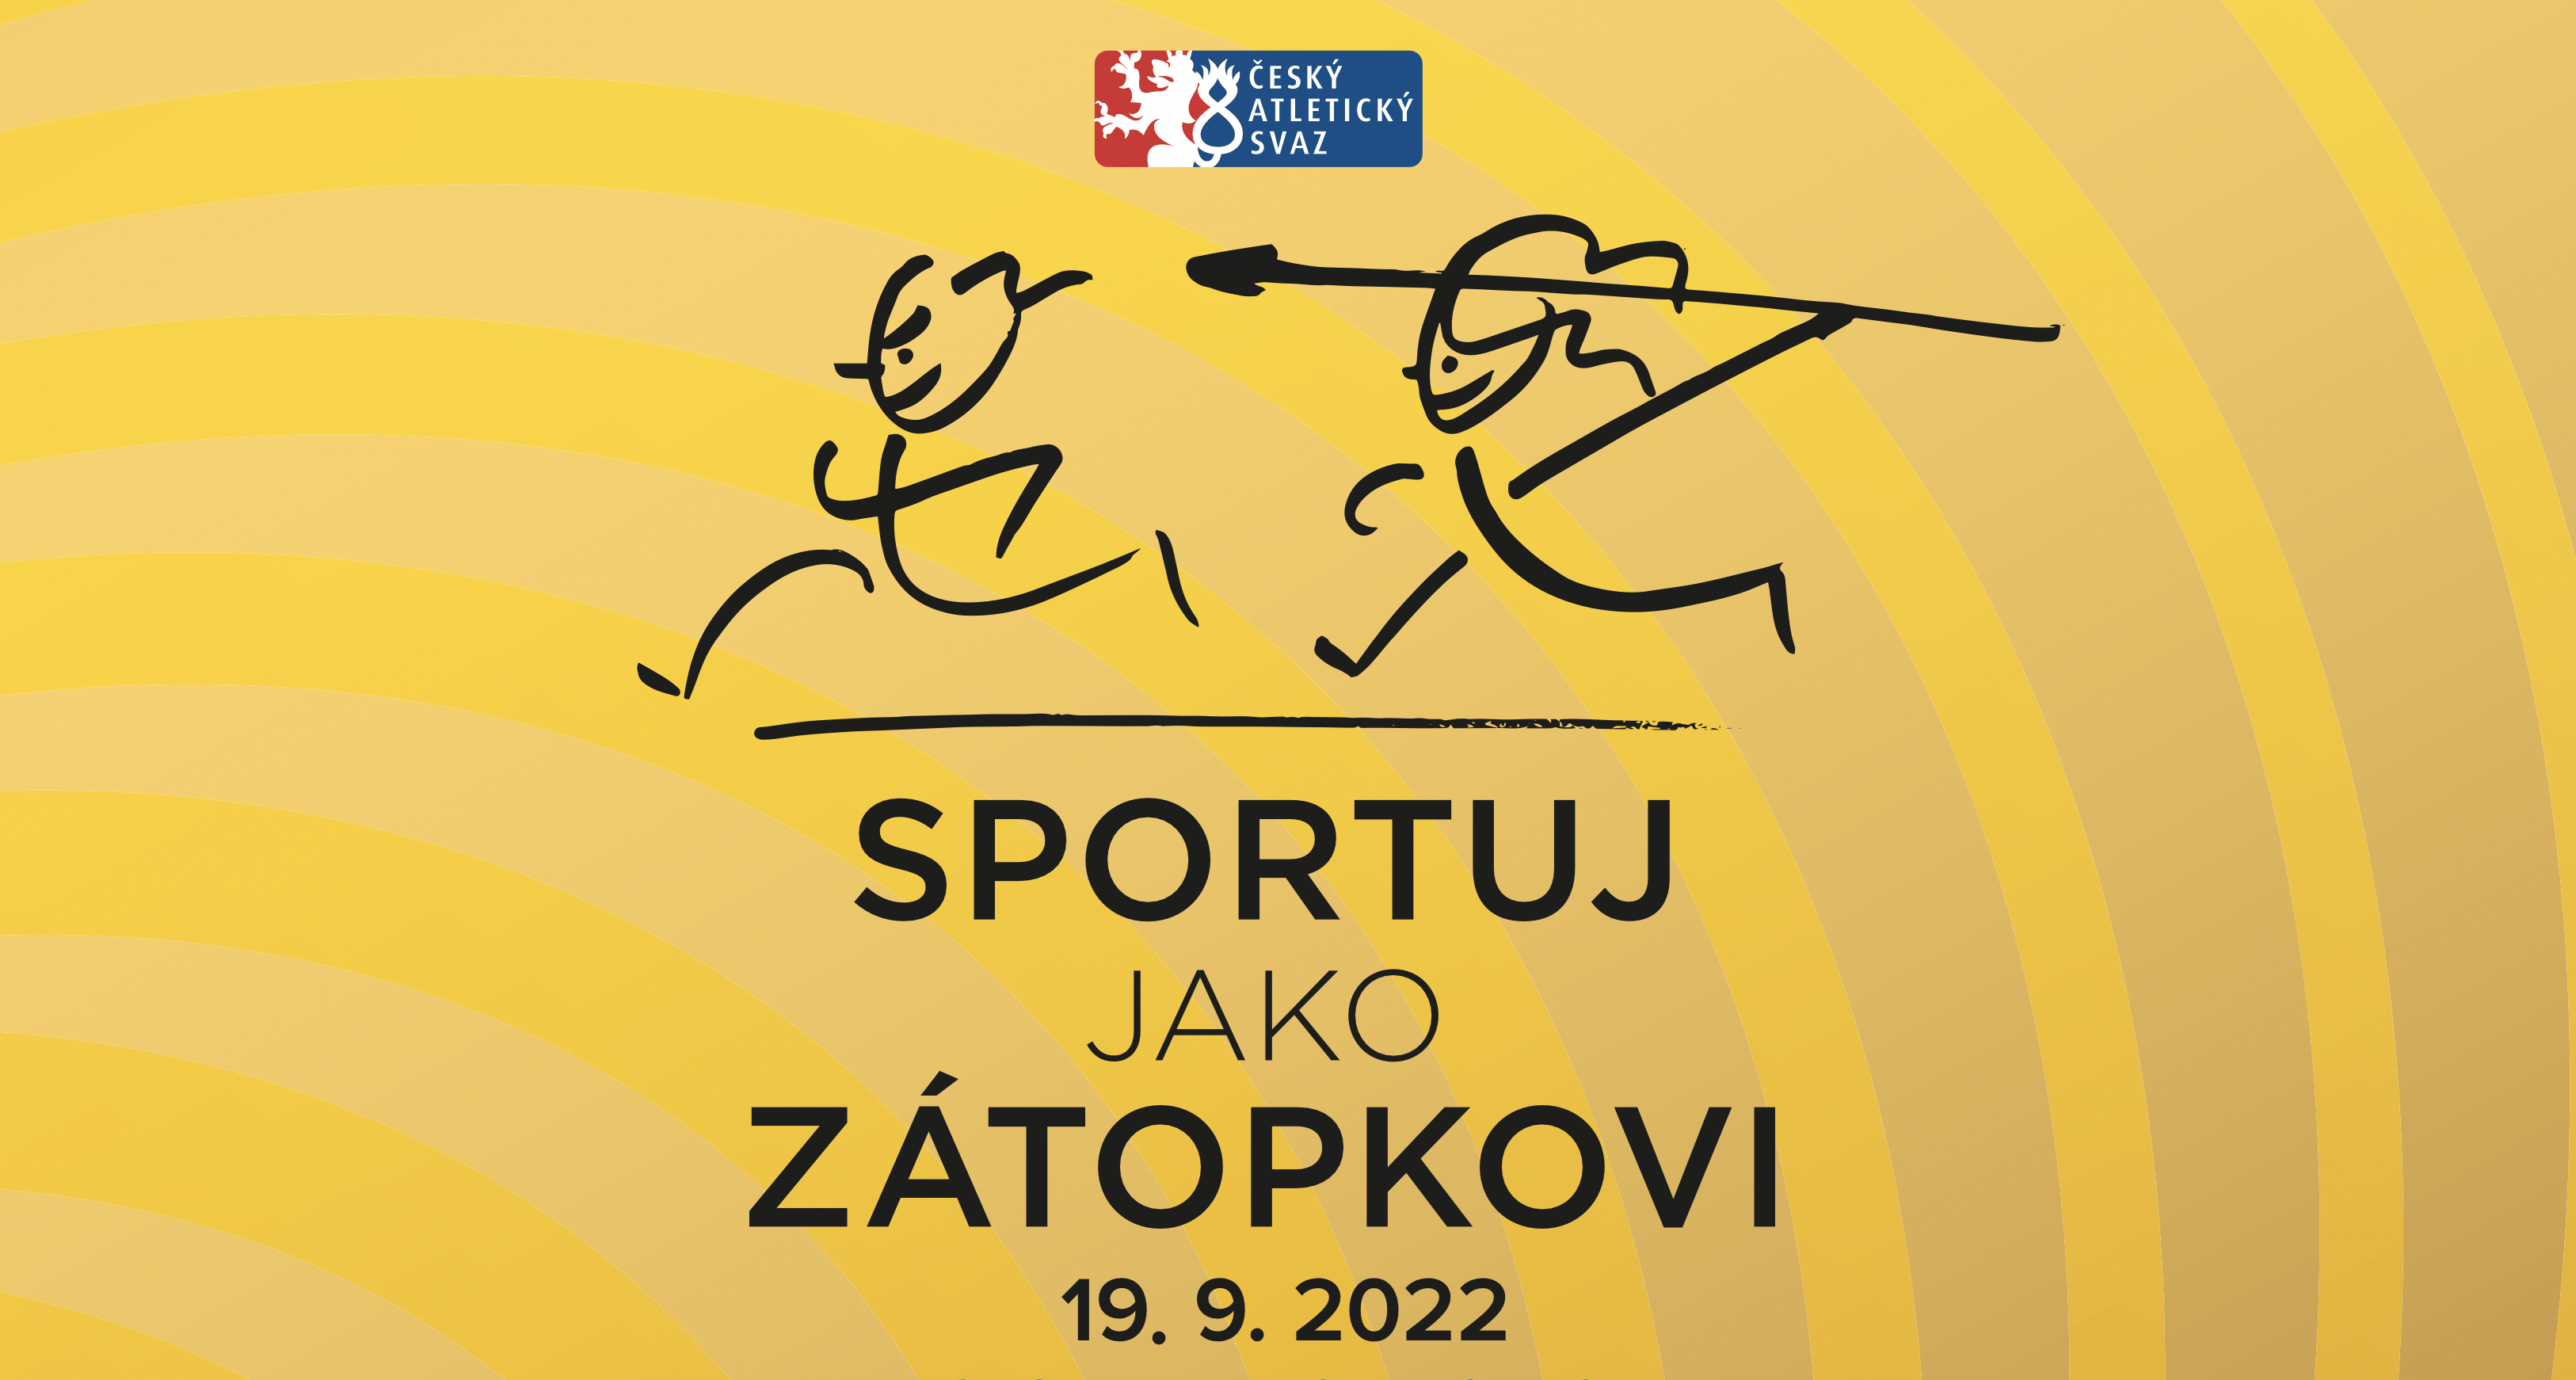 Akce Sportuj jako Zátopkovi proběhne ve Vyškově a Hodoníně